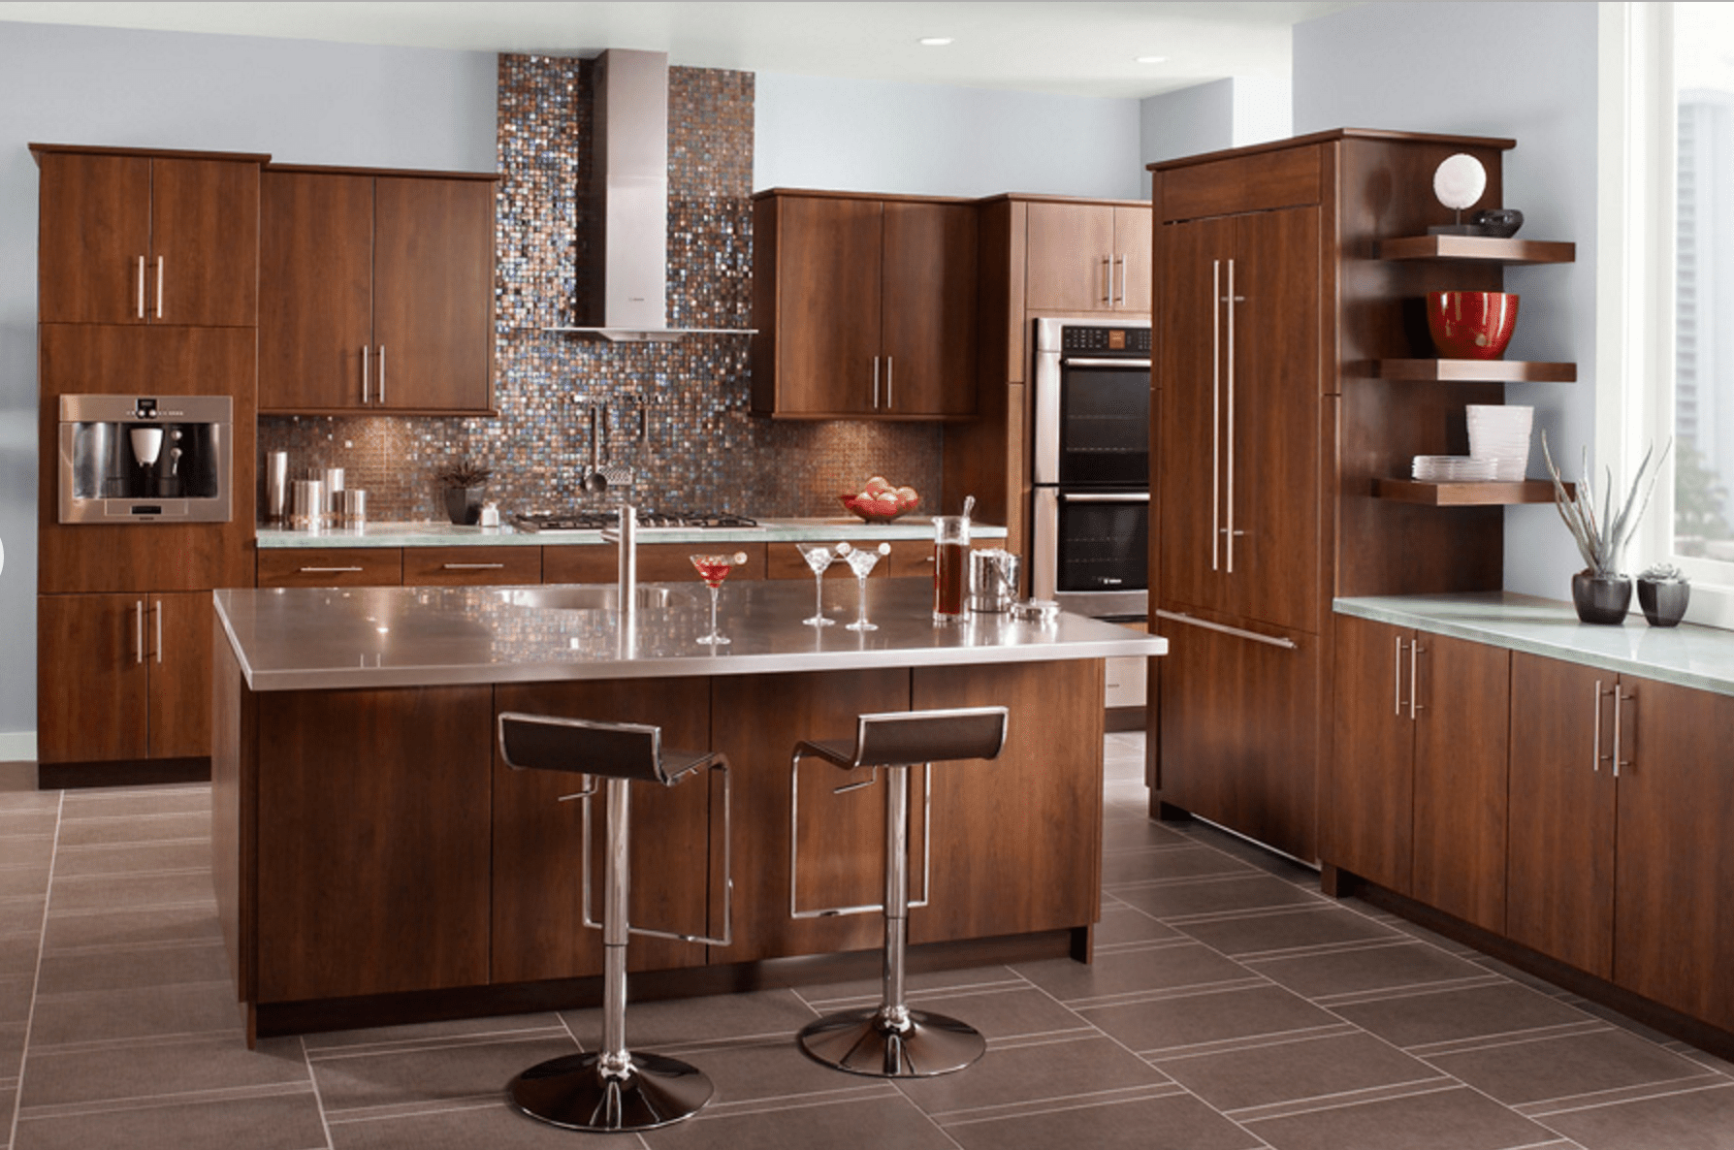 4 Inspiring Gray Kitchen Design Ideas - brown and grey kitchen designs